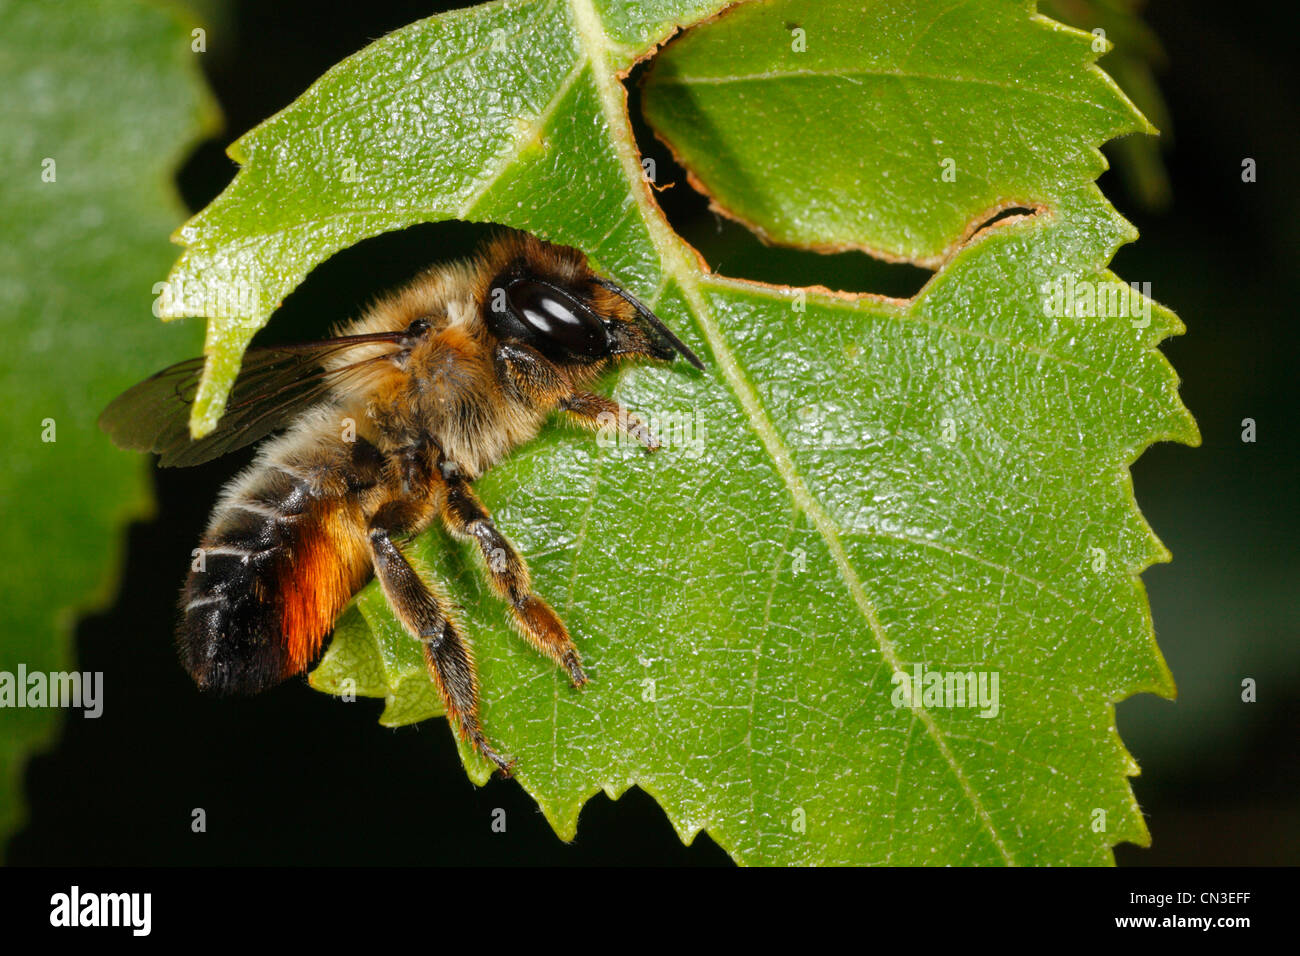 Blatt-Cutter Bee (Megachile Willughbiella) schneiden eine Scheibe von einem Birkenblatt (Betula). Snailbeach, Shropshire, England. Juli. Stockfoto